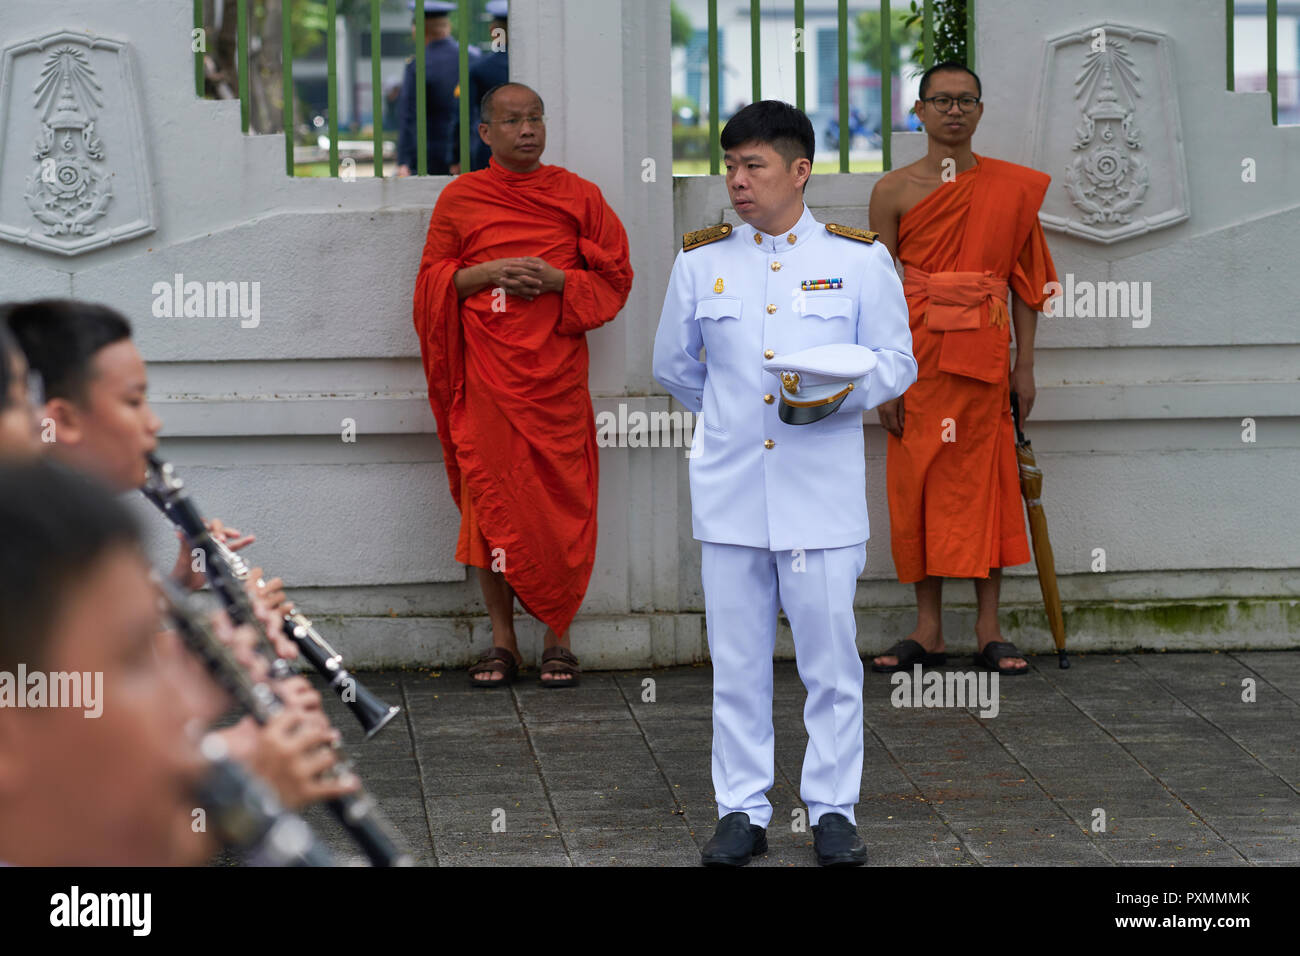 Un soldat thaïlandais et deux moines observer un élève à l'occasion du défilé du jour de Chulalongkorn, à la mémoire de l'ancien roi Chulalongkorn, Bangkok, Thaïlande Banque D'Images